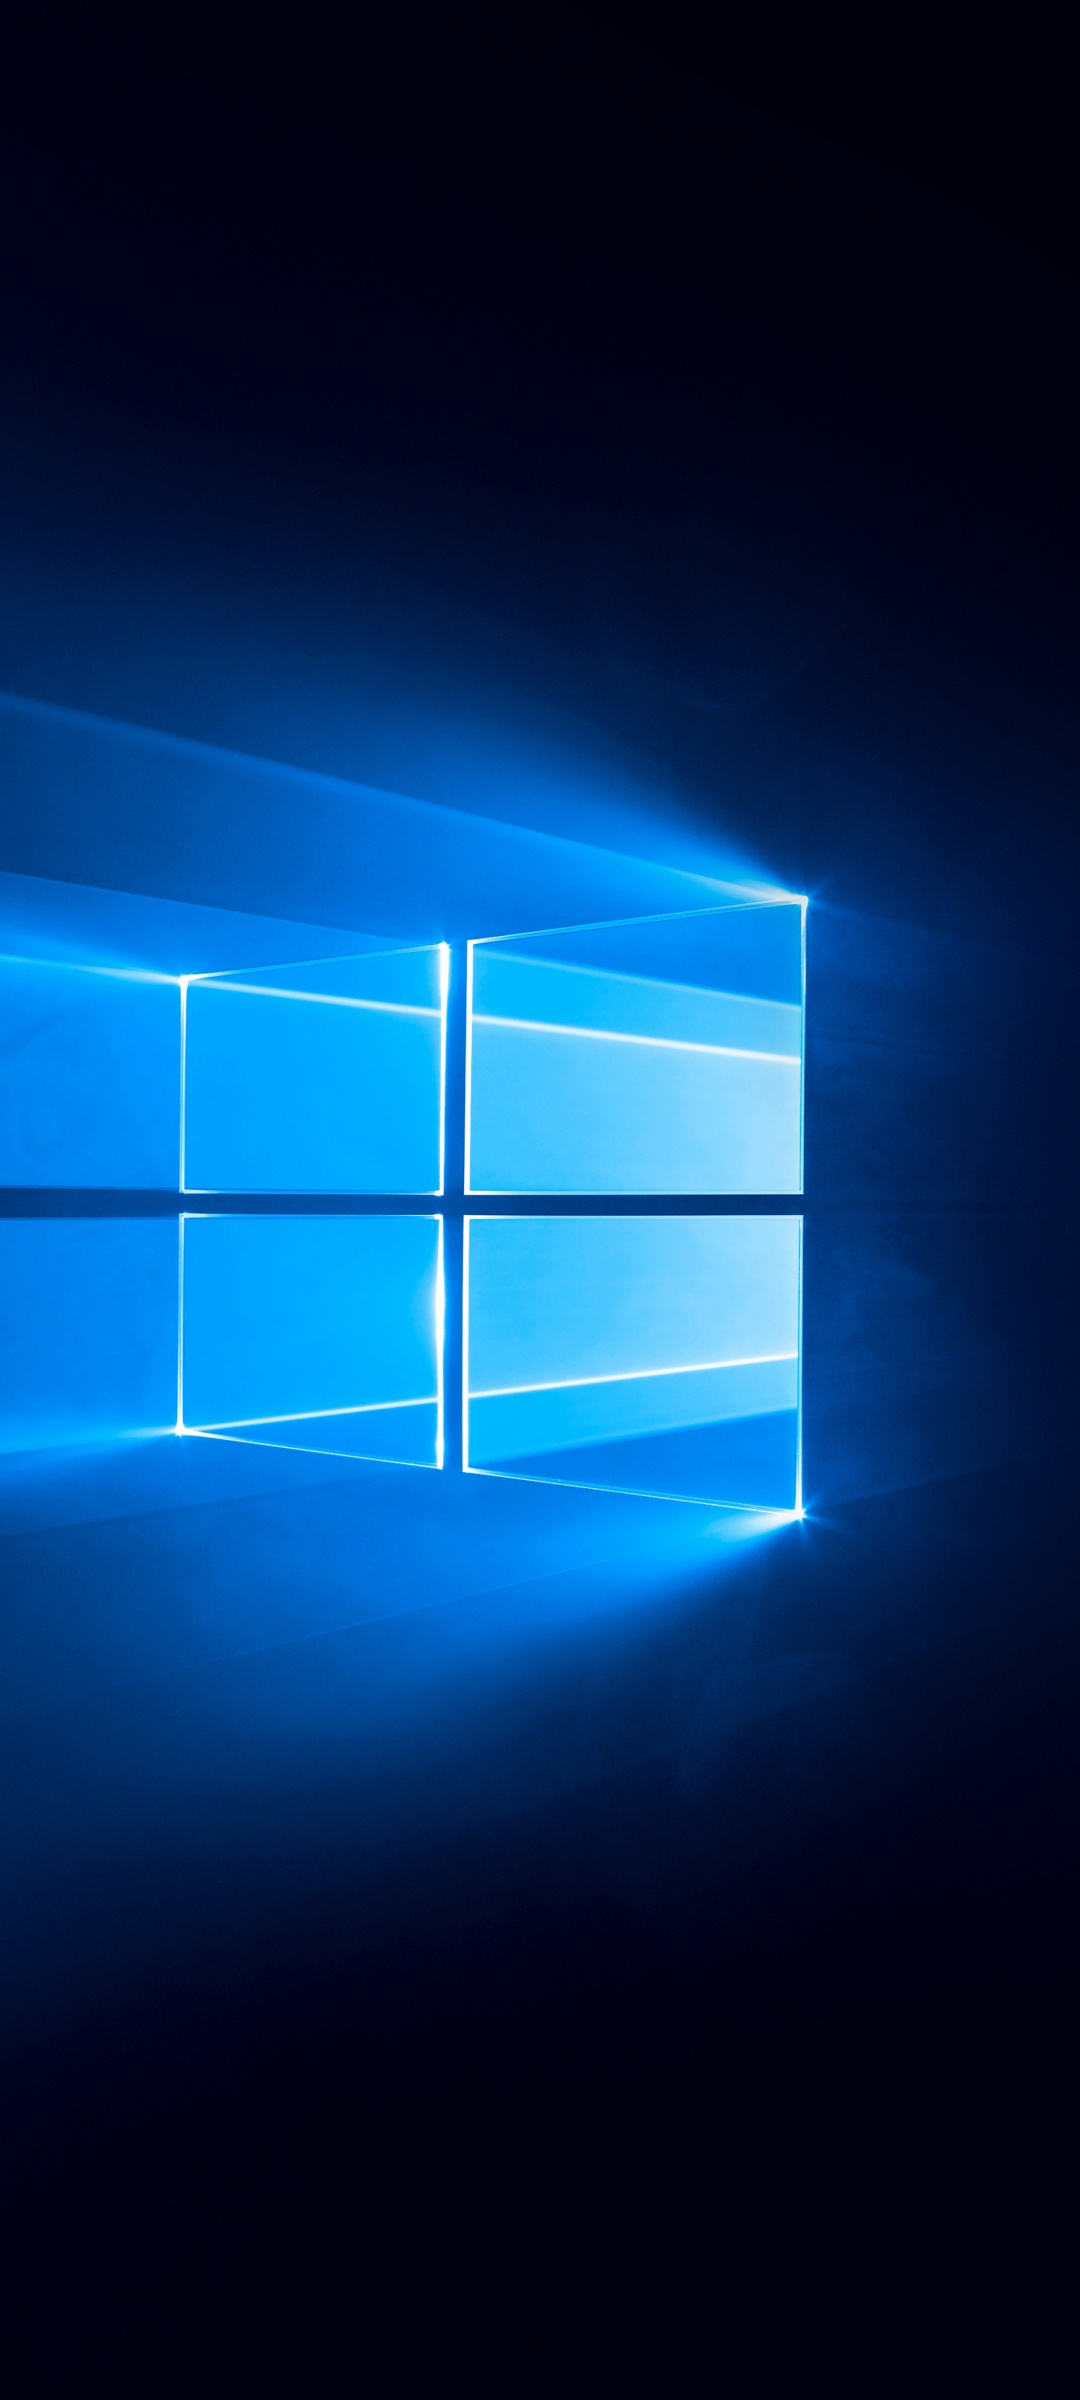 Logo Windows là biểu tượng của hệ điều hành phổ biến được sử dụng trên hầu hết các thiết bị điện tử hiện nay. Với kết cấu đơn giản và khả năng tùy chỉnh cao, logo Windows đã trở thành biểu tượng đại diện cho sự tiện lợi và dễ dàng sử dụng. Xem hình ảnh liên quan để hiểu thêm.